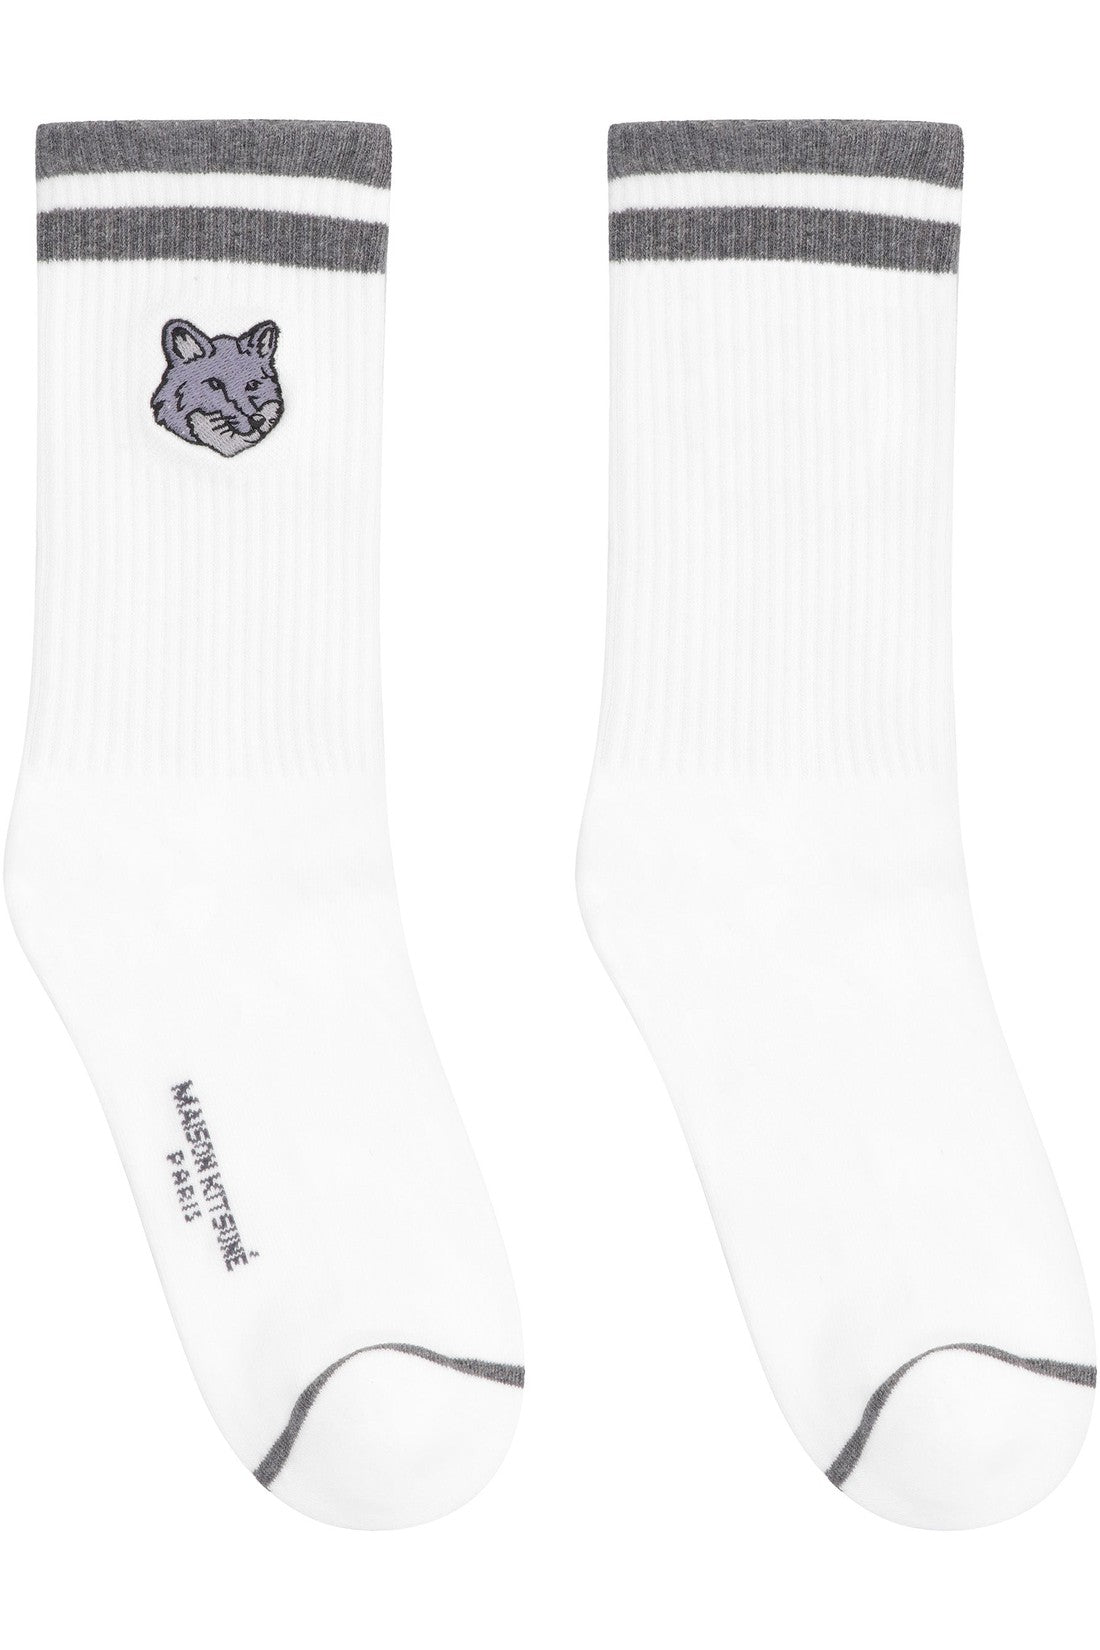 Maison Kitsuné-OUTLET-SALE-Cotton socks with logo-ARCHIVIST